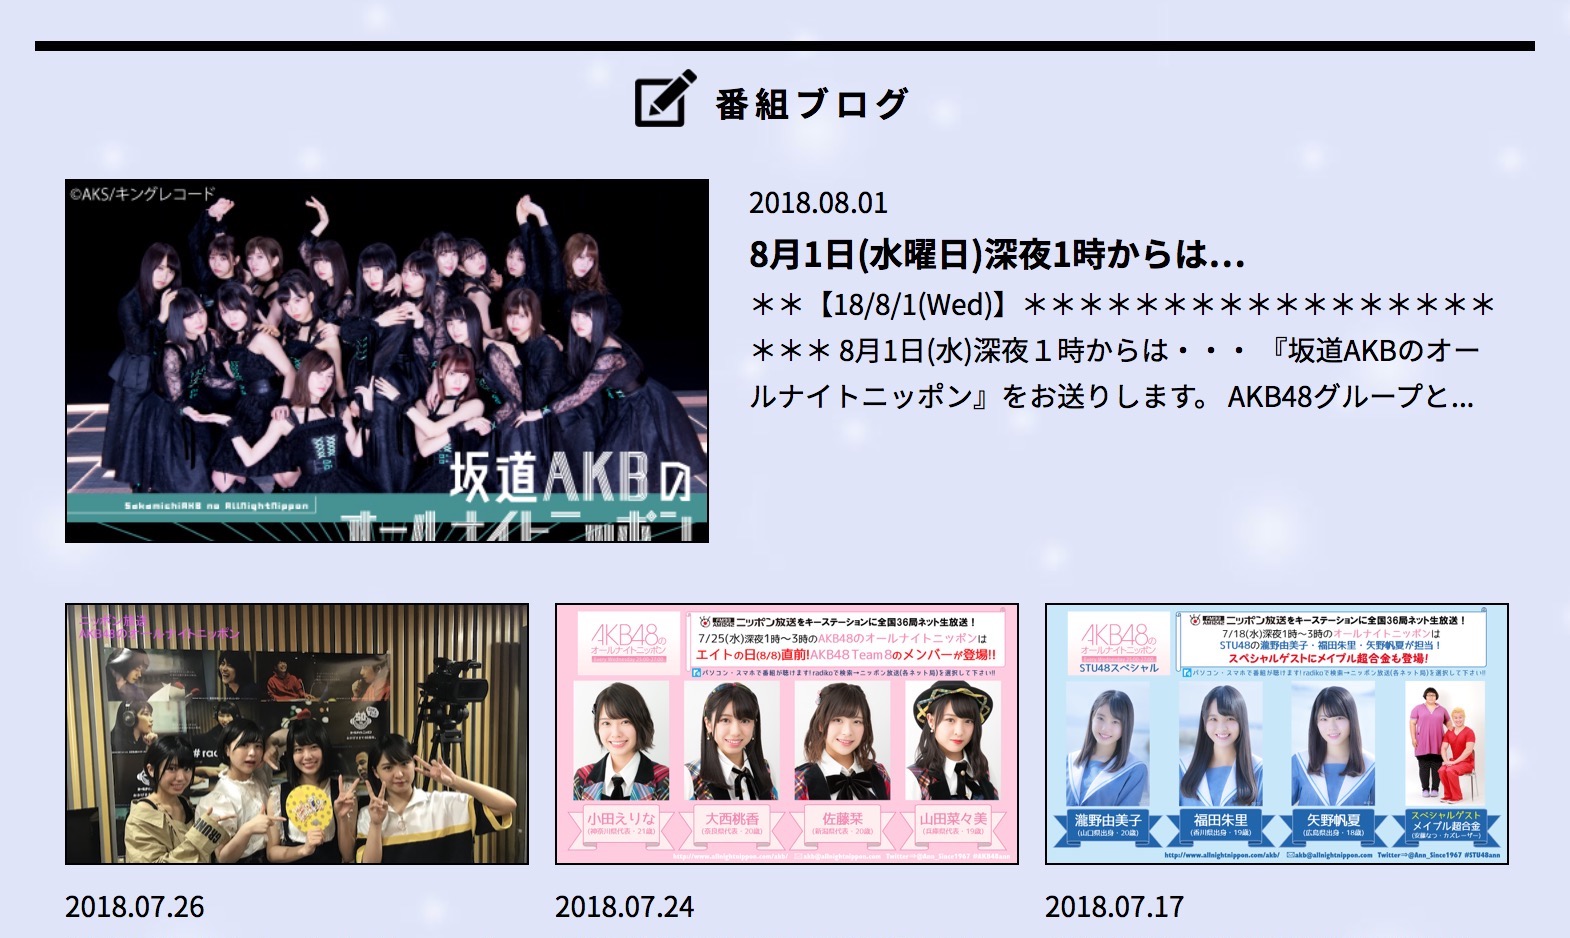 ニッポン放送「AKB48のオールナイトニッポン」公式サイト